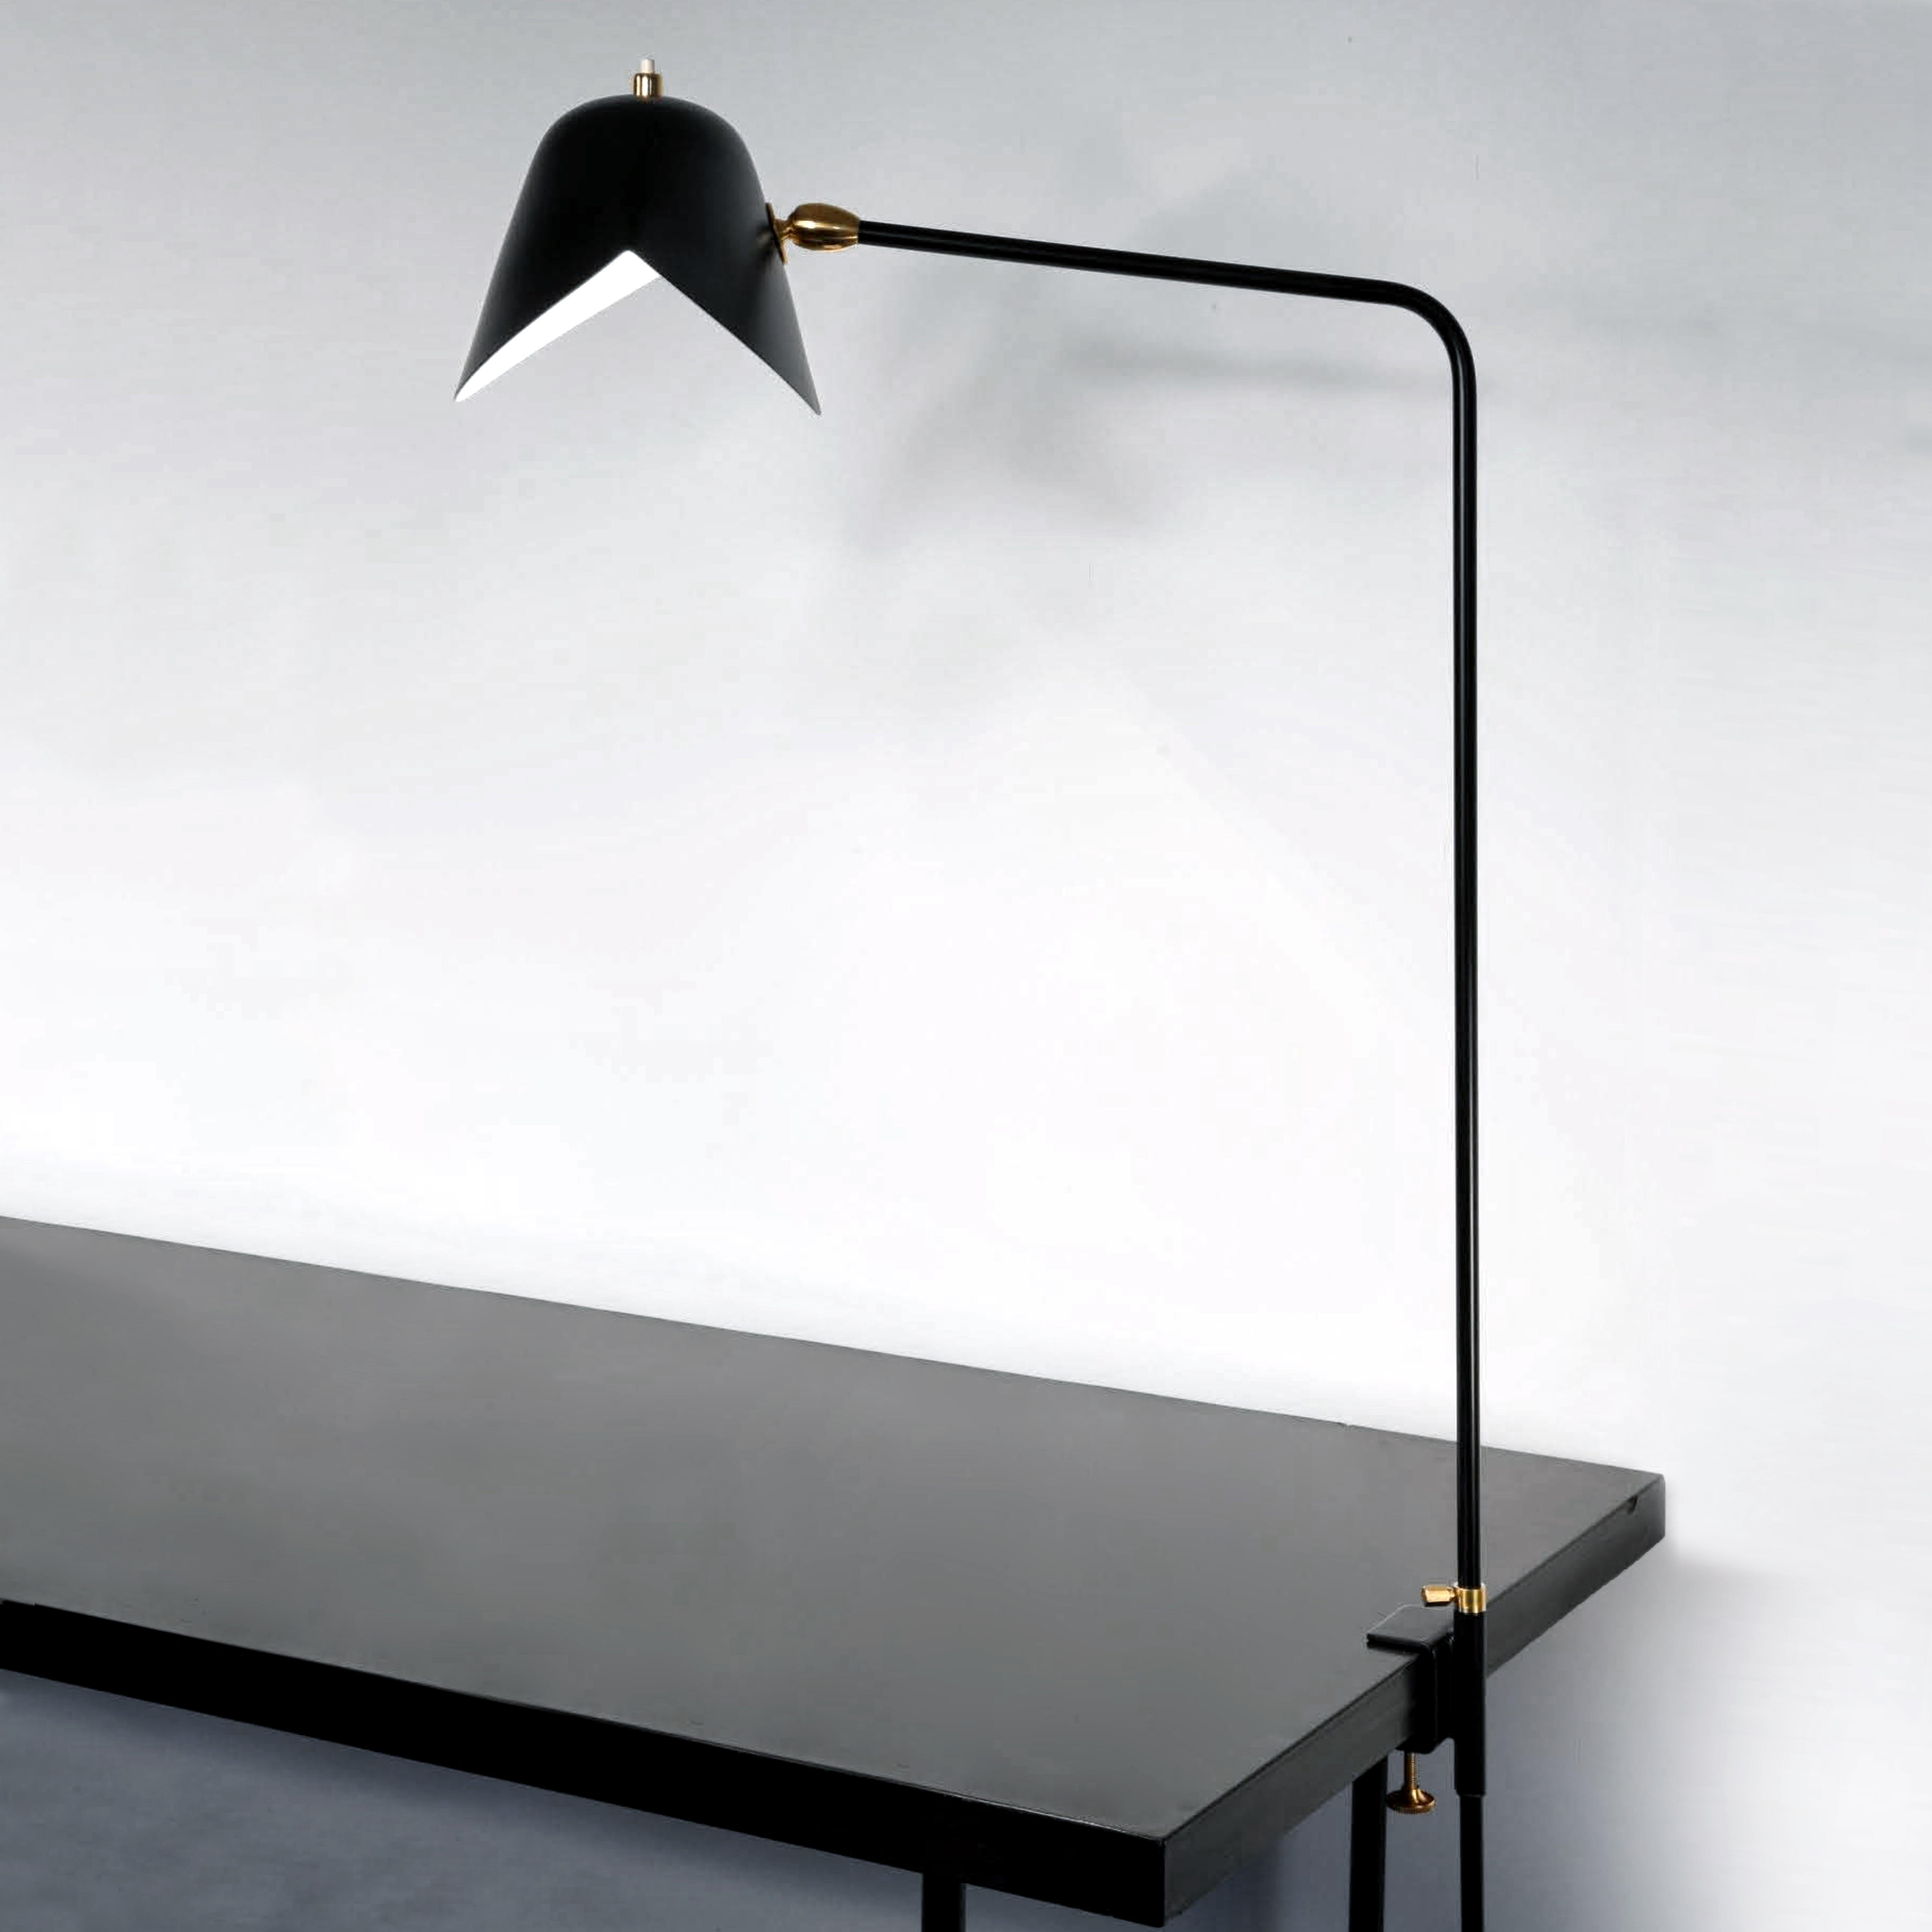 Modèle de lampe de table 'Simple Agrafée table lamp' conçu par Serge Mouille en 1957.

Fabriqué par les Editions Serge Mouille en France. La production des lampes, des appliques et des lampadaires est réalisée de manière artisanale avec les mêmes